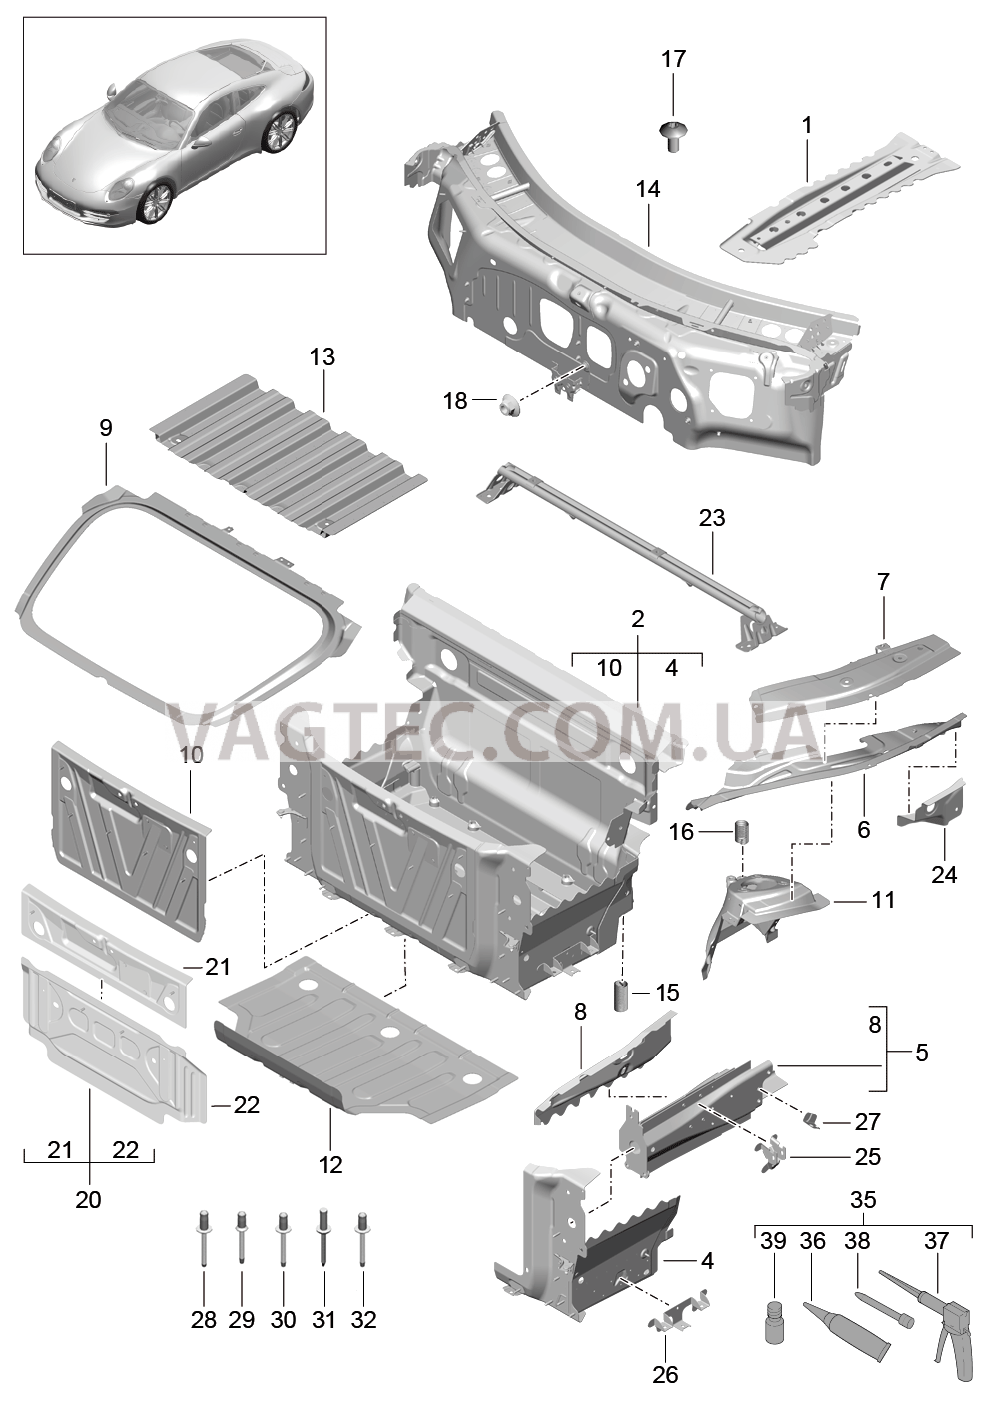 801-010 Передняя часть кузова, Отдельные детали для PORSCHE 911.Carrera 2012-2016